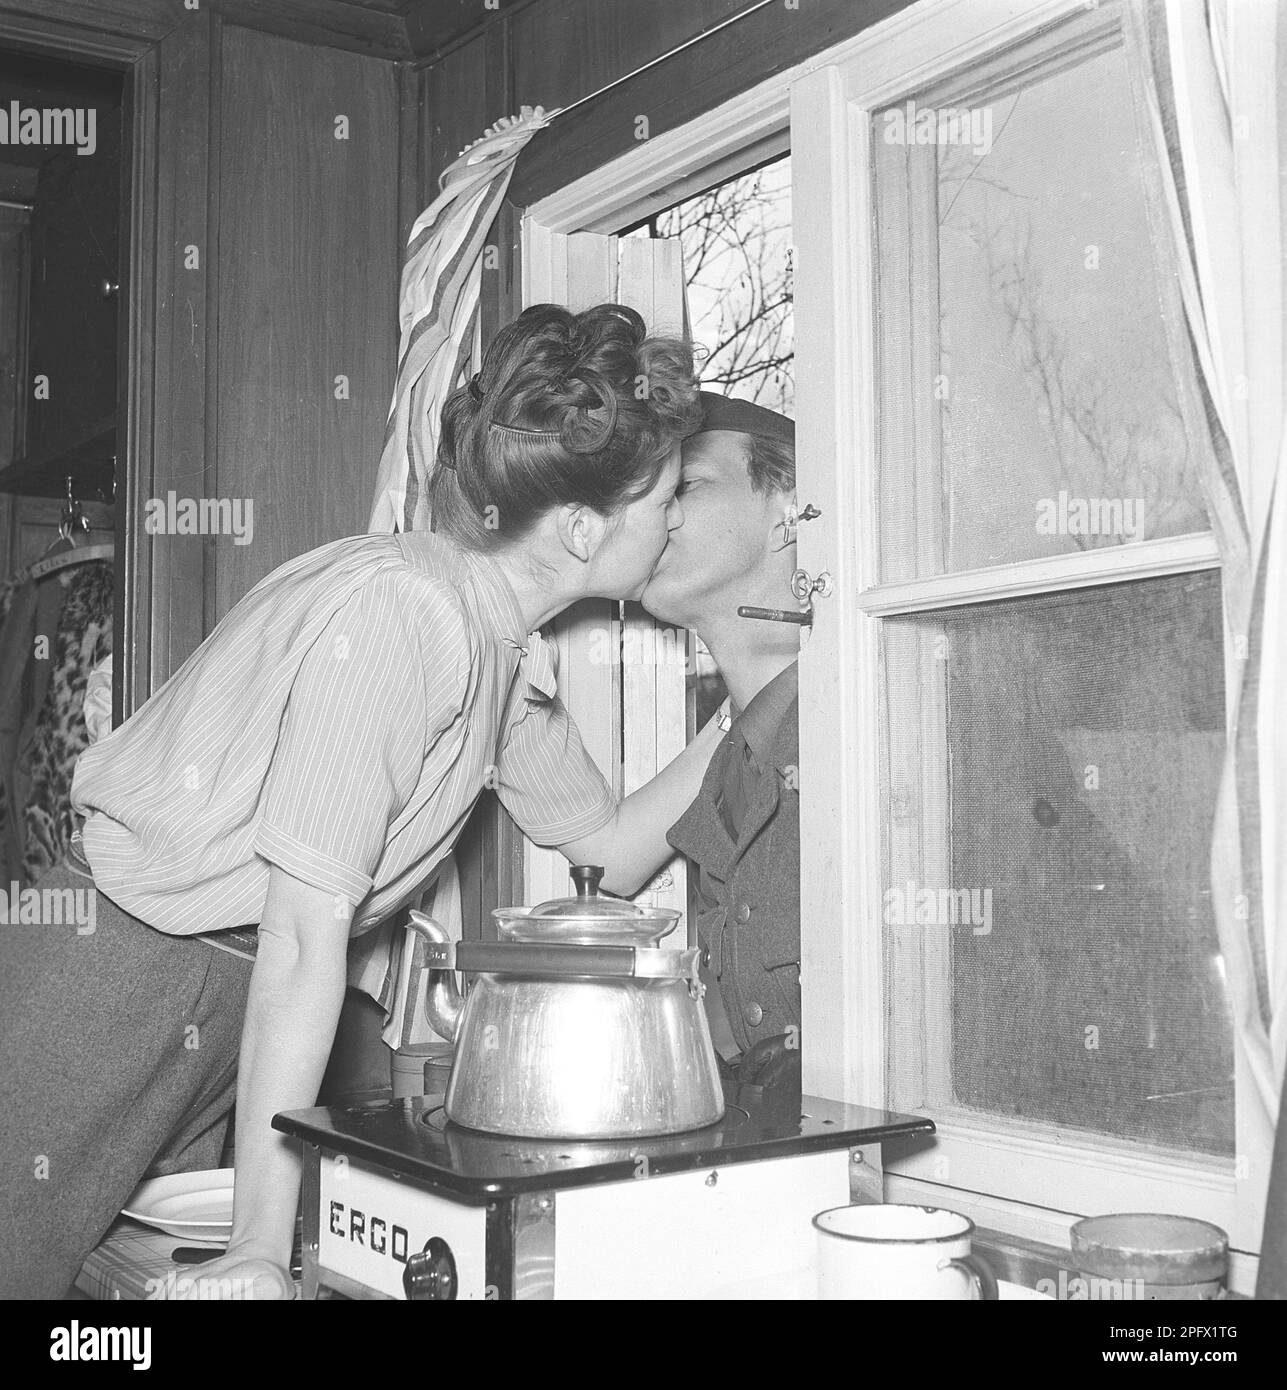 Küssen im 1940er. Jahrhundert. Frisch verheiratete Iris mit Ehemann Bertil küsst sich durch das offene Fenster. Zu dieser Zeit im Zweiten Weltkrieg von 1940er ist er im Militärdienst und seine Station befindet sich in den Bergen des schwedischen Lapplands in der Nähe von Abisko. Schweden 1943 Kristoffersson Ref D110-1 Stockfoto